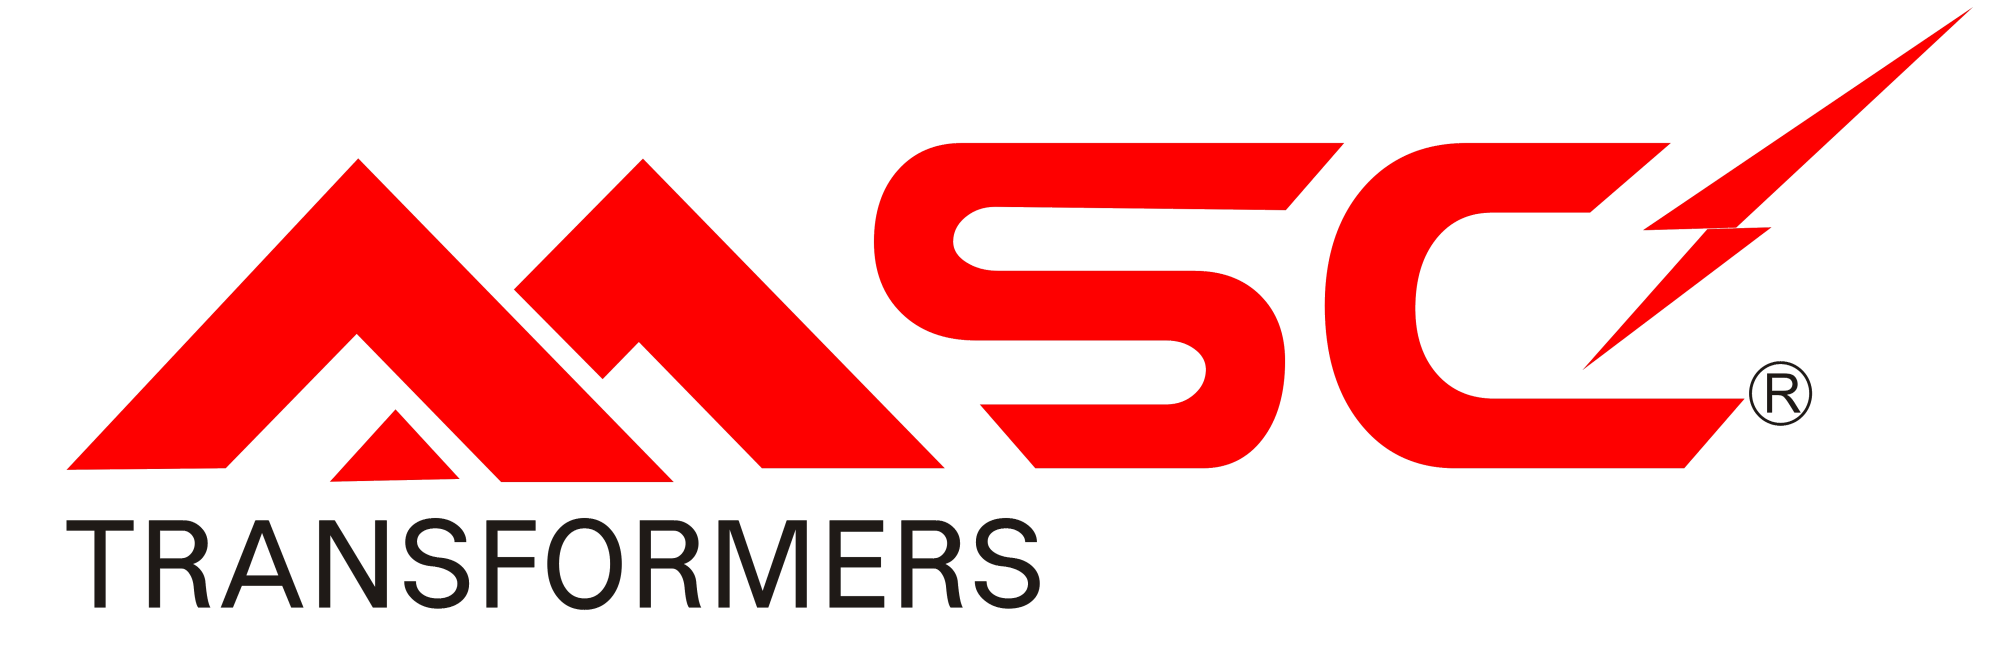 MSC_Logo_New